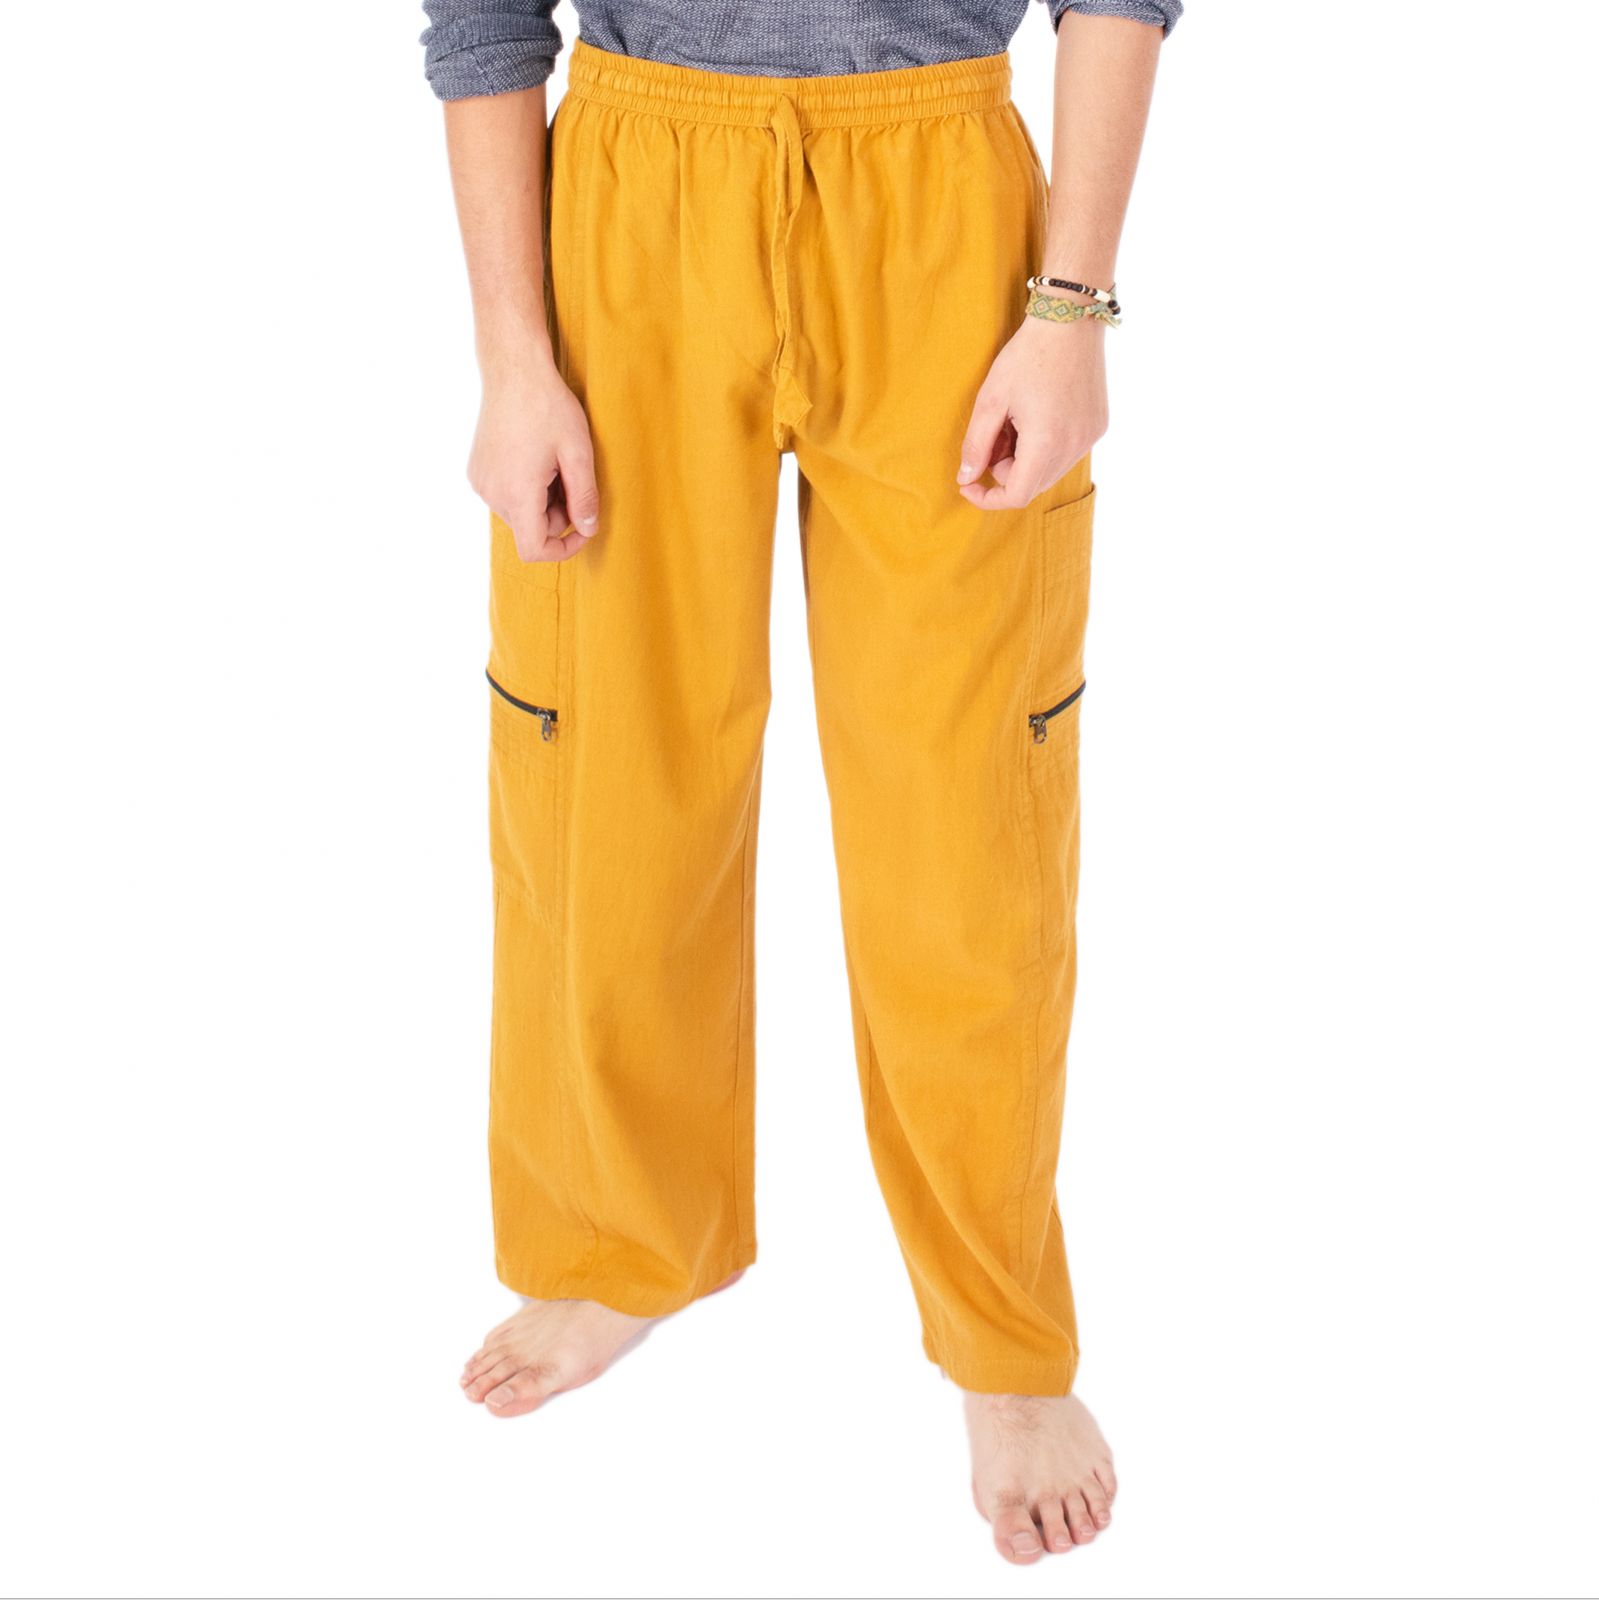 Pantaloni gialli da uomo in cotone Taral Mustard Yellow Nepal